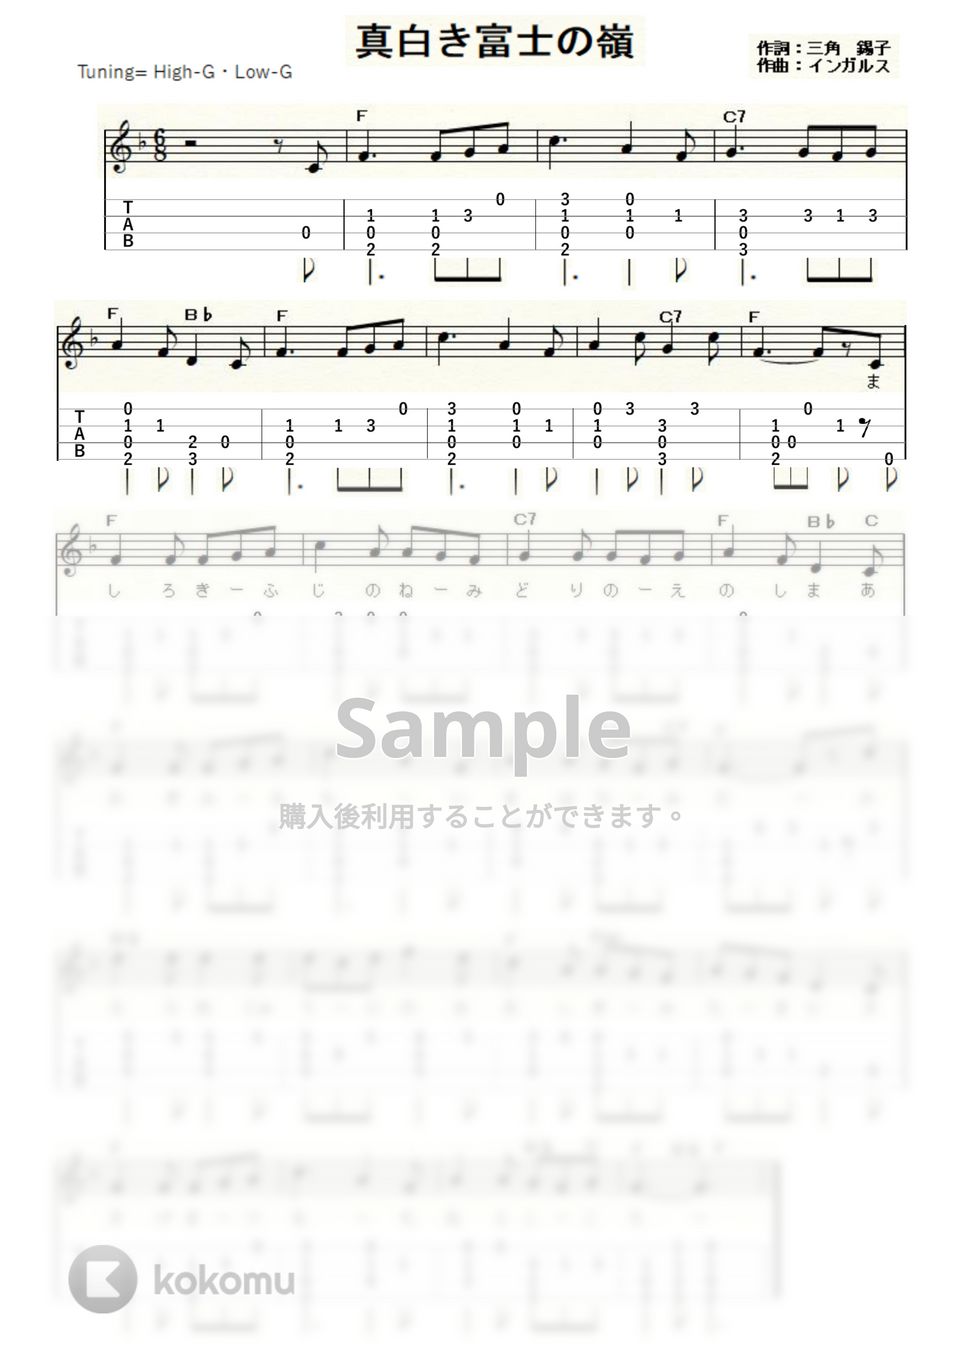 ジェレマイア・インガルス - 真白き富士の嶺 (ｳｸﾚﾚｿﾛ/High-G,Low-G/初級) by ukulelepapa